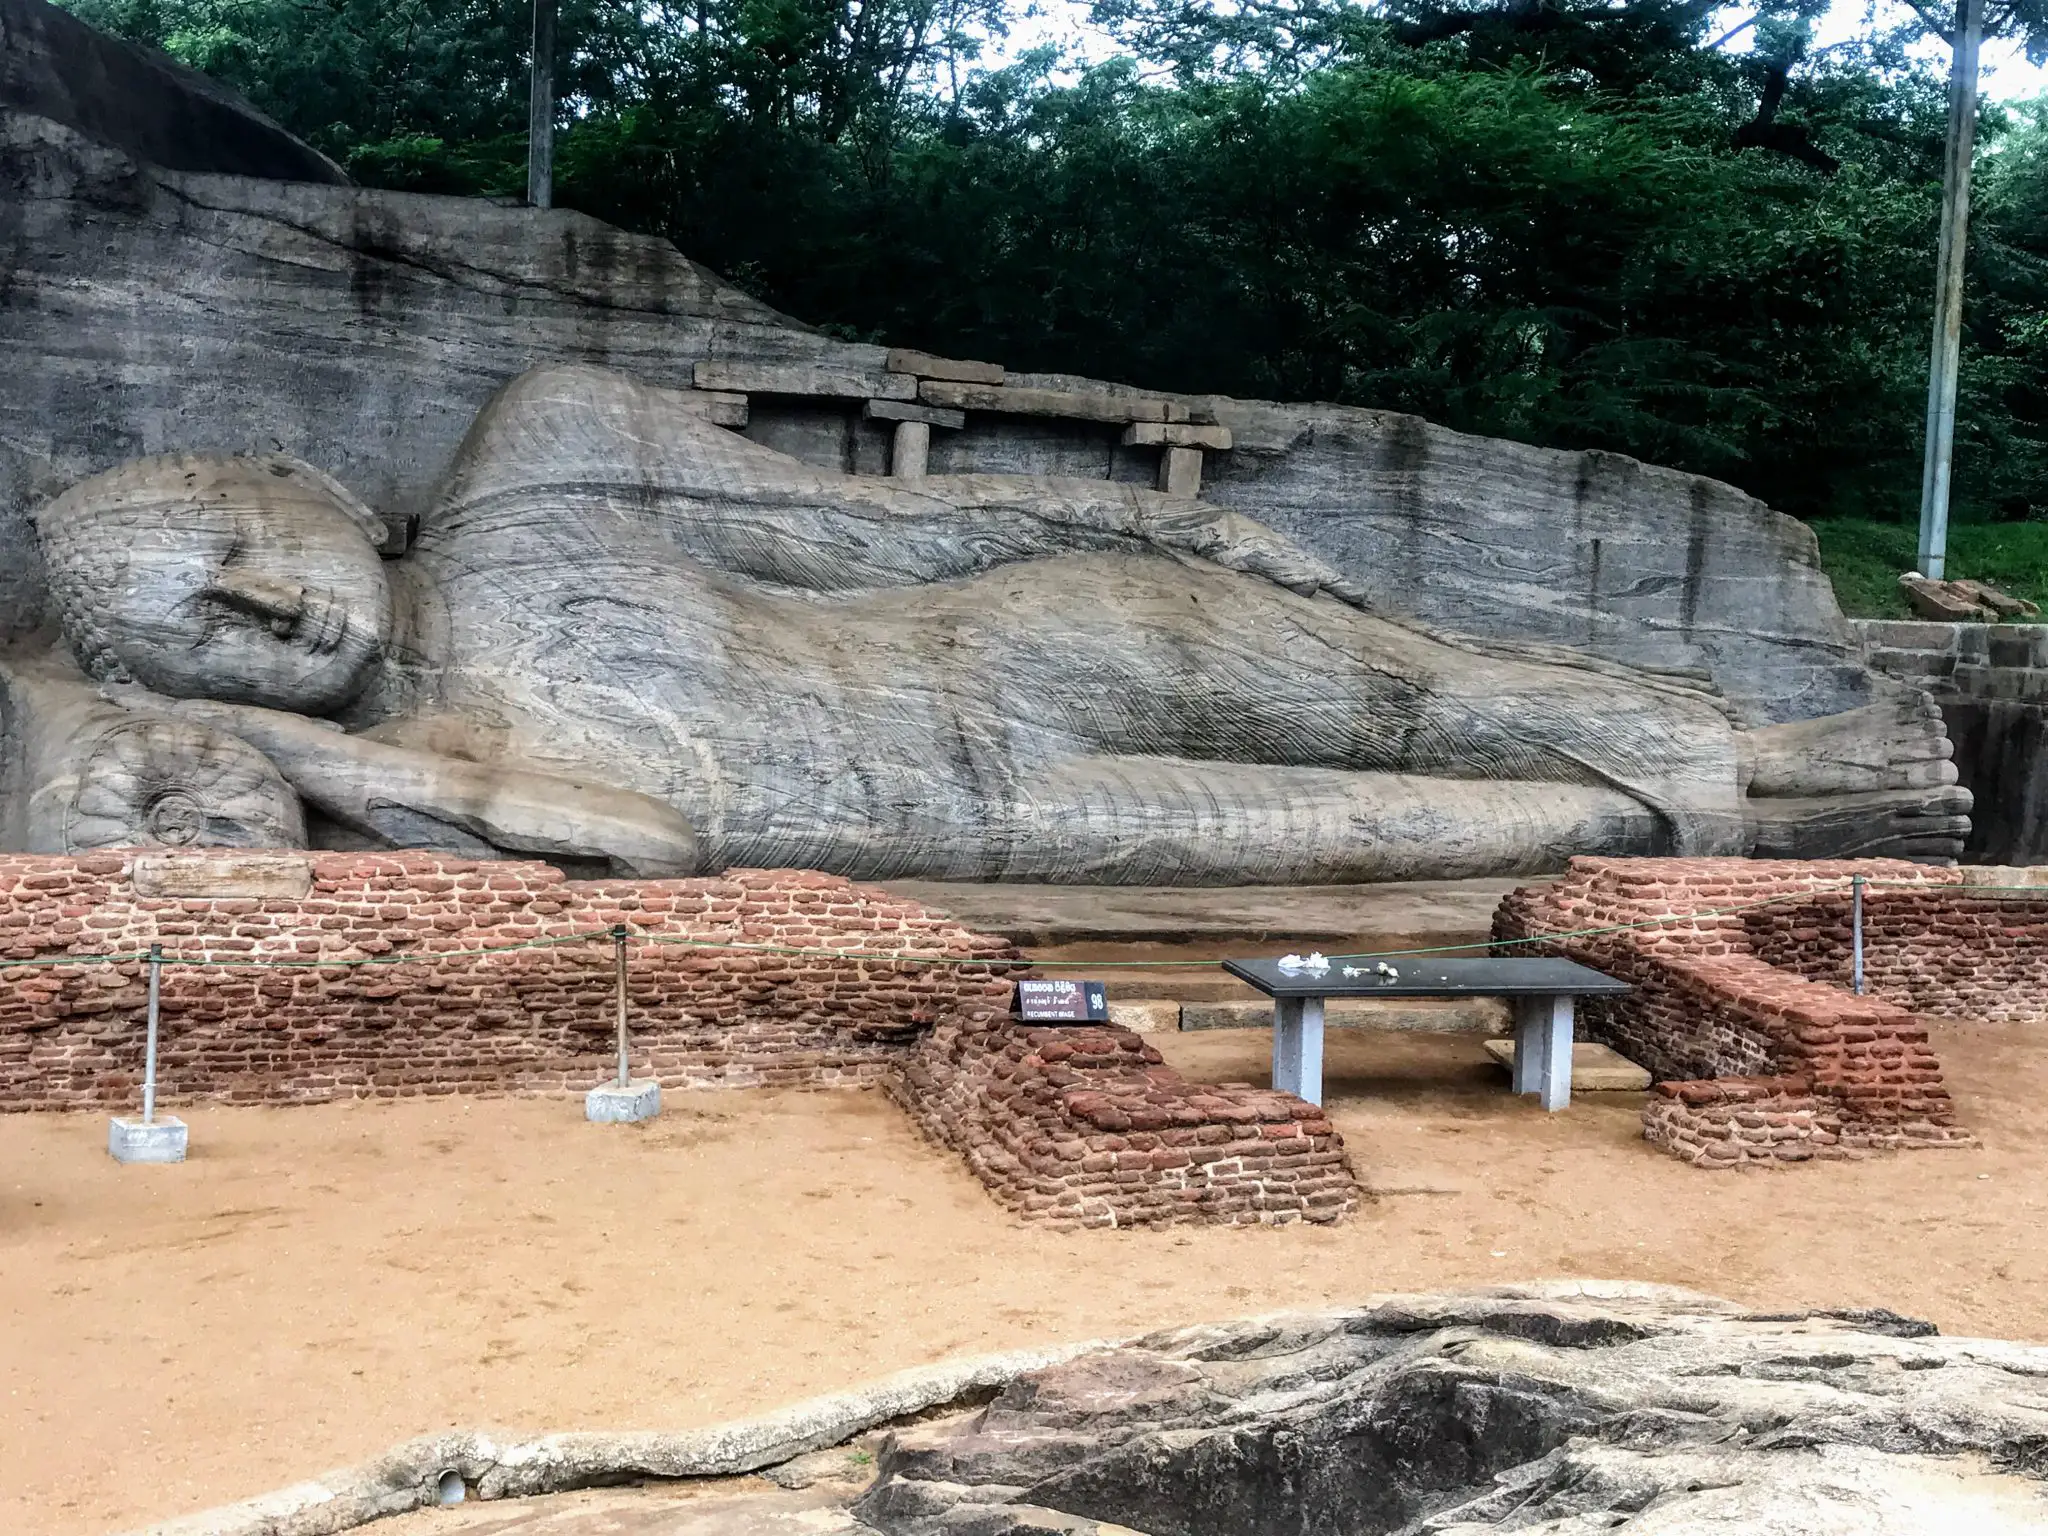 Gal Vihara, Polonnaruwa, Sri Lanka